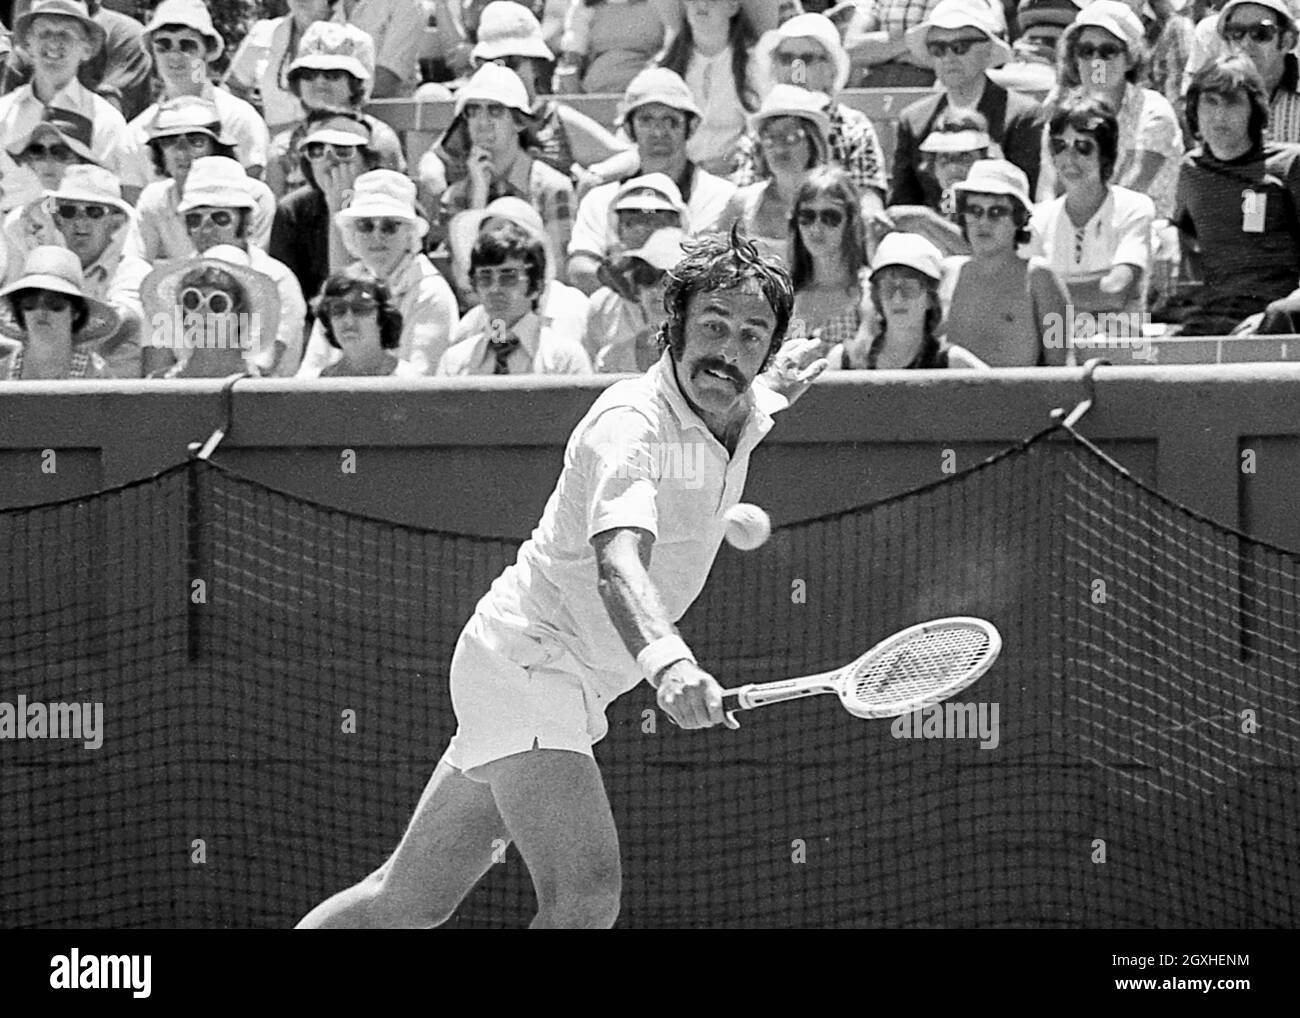 John Newcombe, Abierto de Australia 1976, Final del Barrio, Club de Tenis Kooyong Lawn, 26 de Dez.1975 - 4 de enero de 1976, Melbourne. Foto de stock